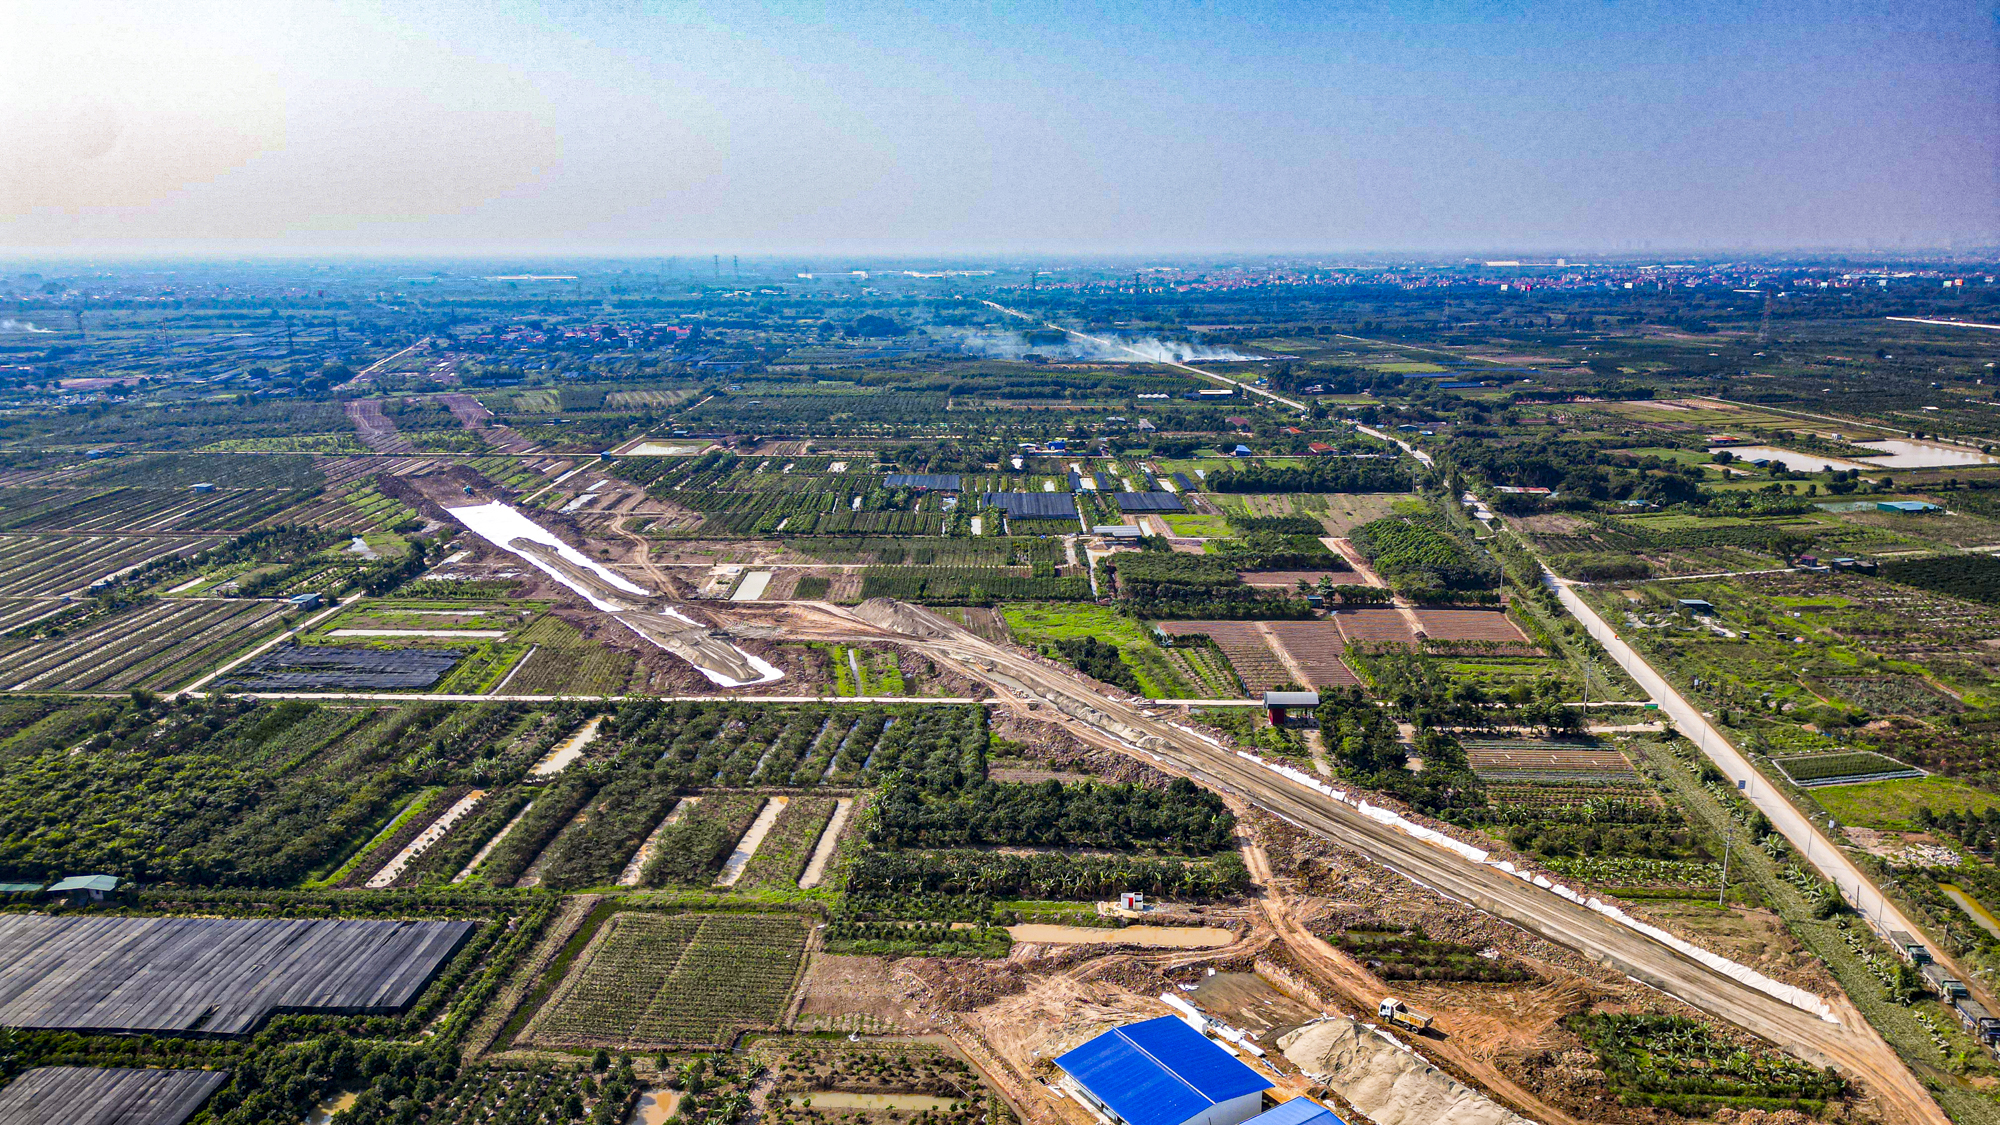 Khu vực sẽ làm đường cao tốc giáp Hà Nội, kết nối với cây cầu mới vượt sông Hồng- Ảnh 10.